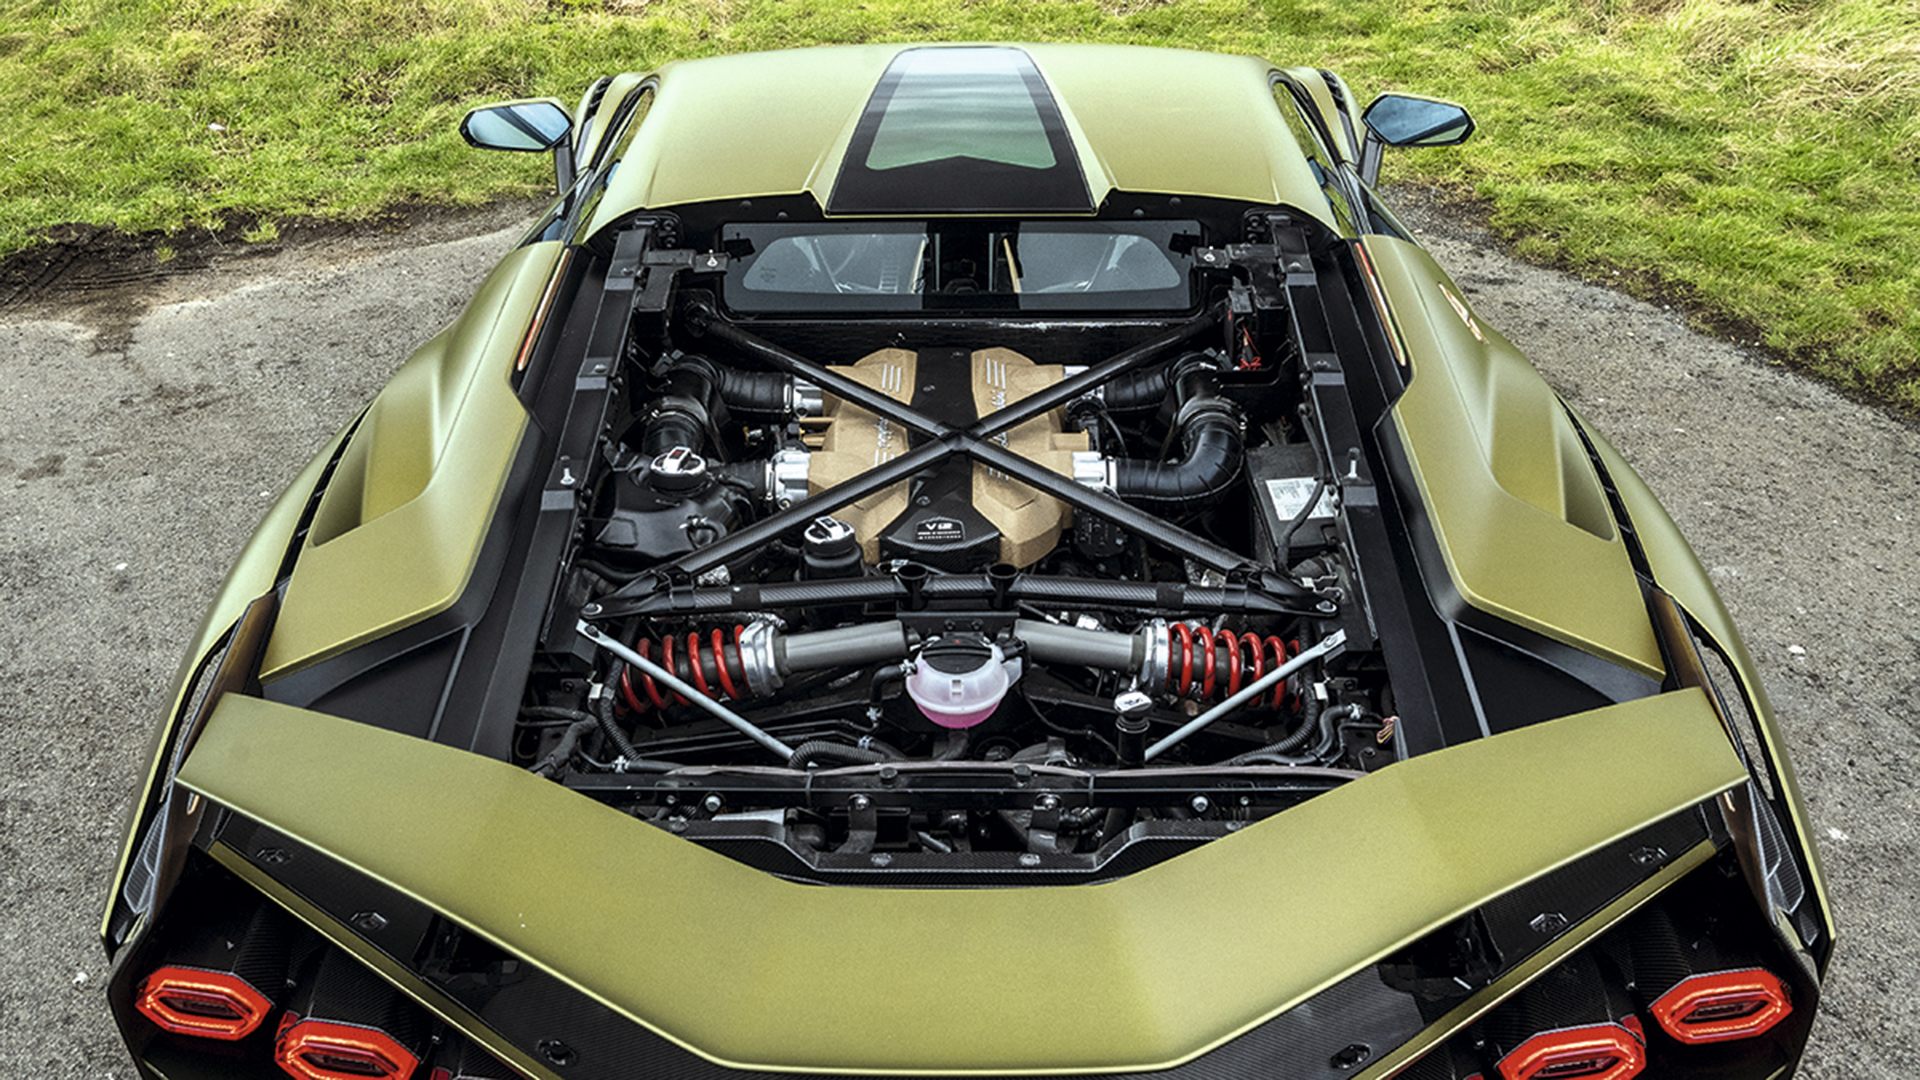 Mesin Lamborghini adalah V12.  Konversi ke listrik akan mengakhiri warisan penciptanya.  E-fuel bisa menghematnya dan mau menunggu perkembangannya